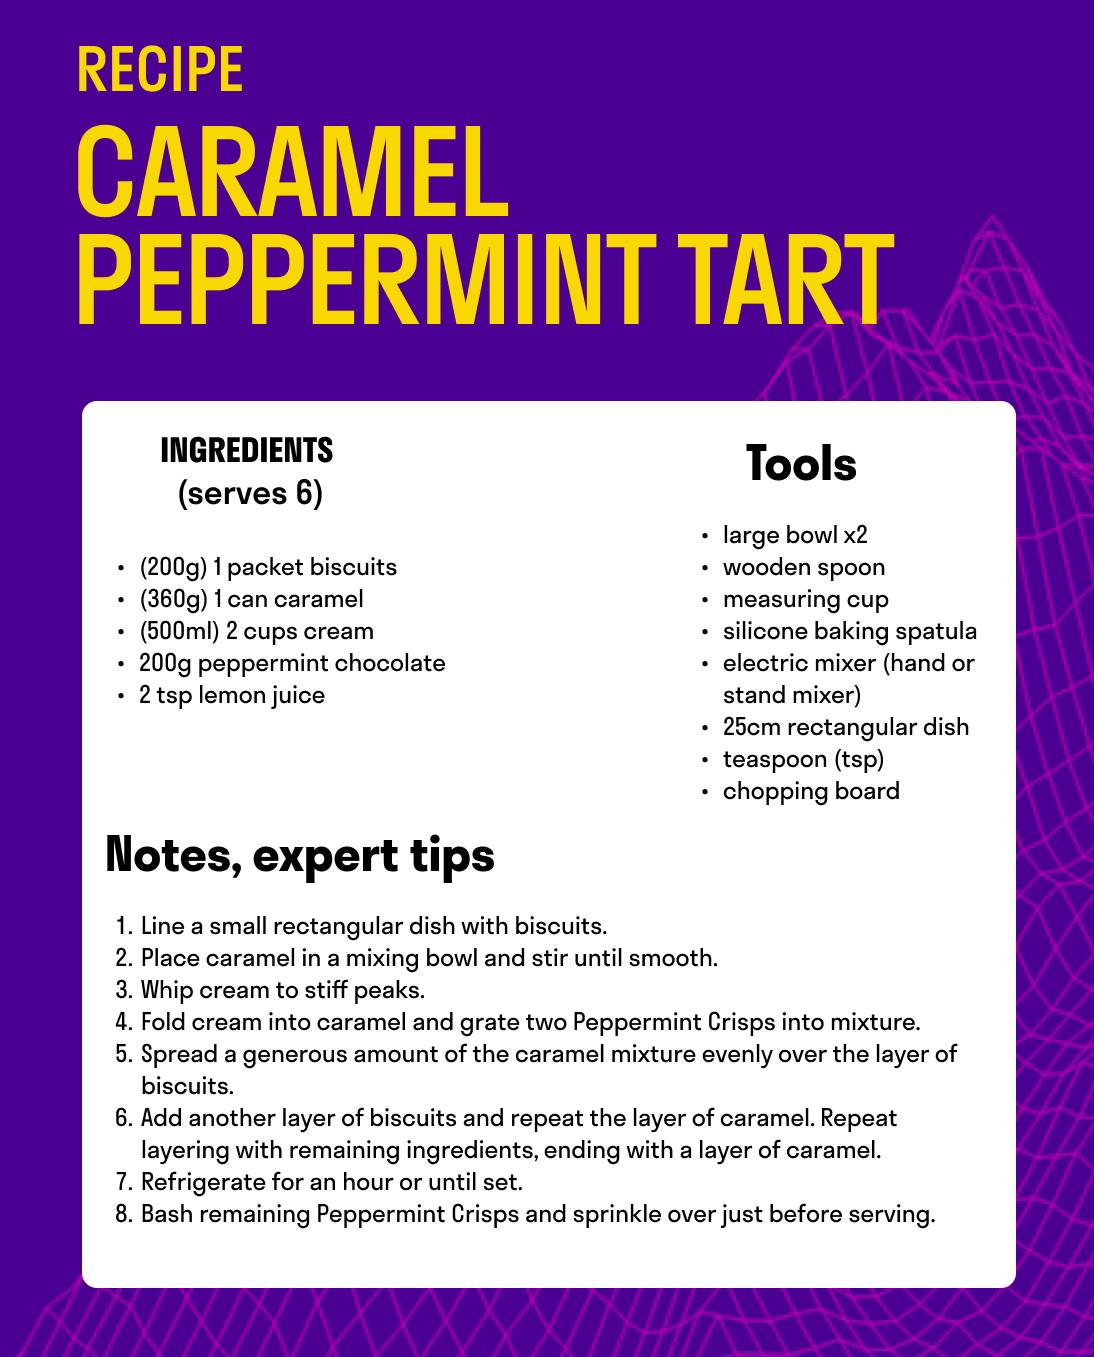 Caramel Peppermint Tart.png